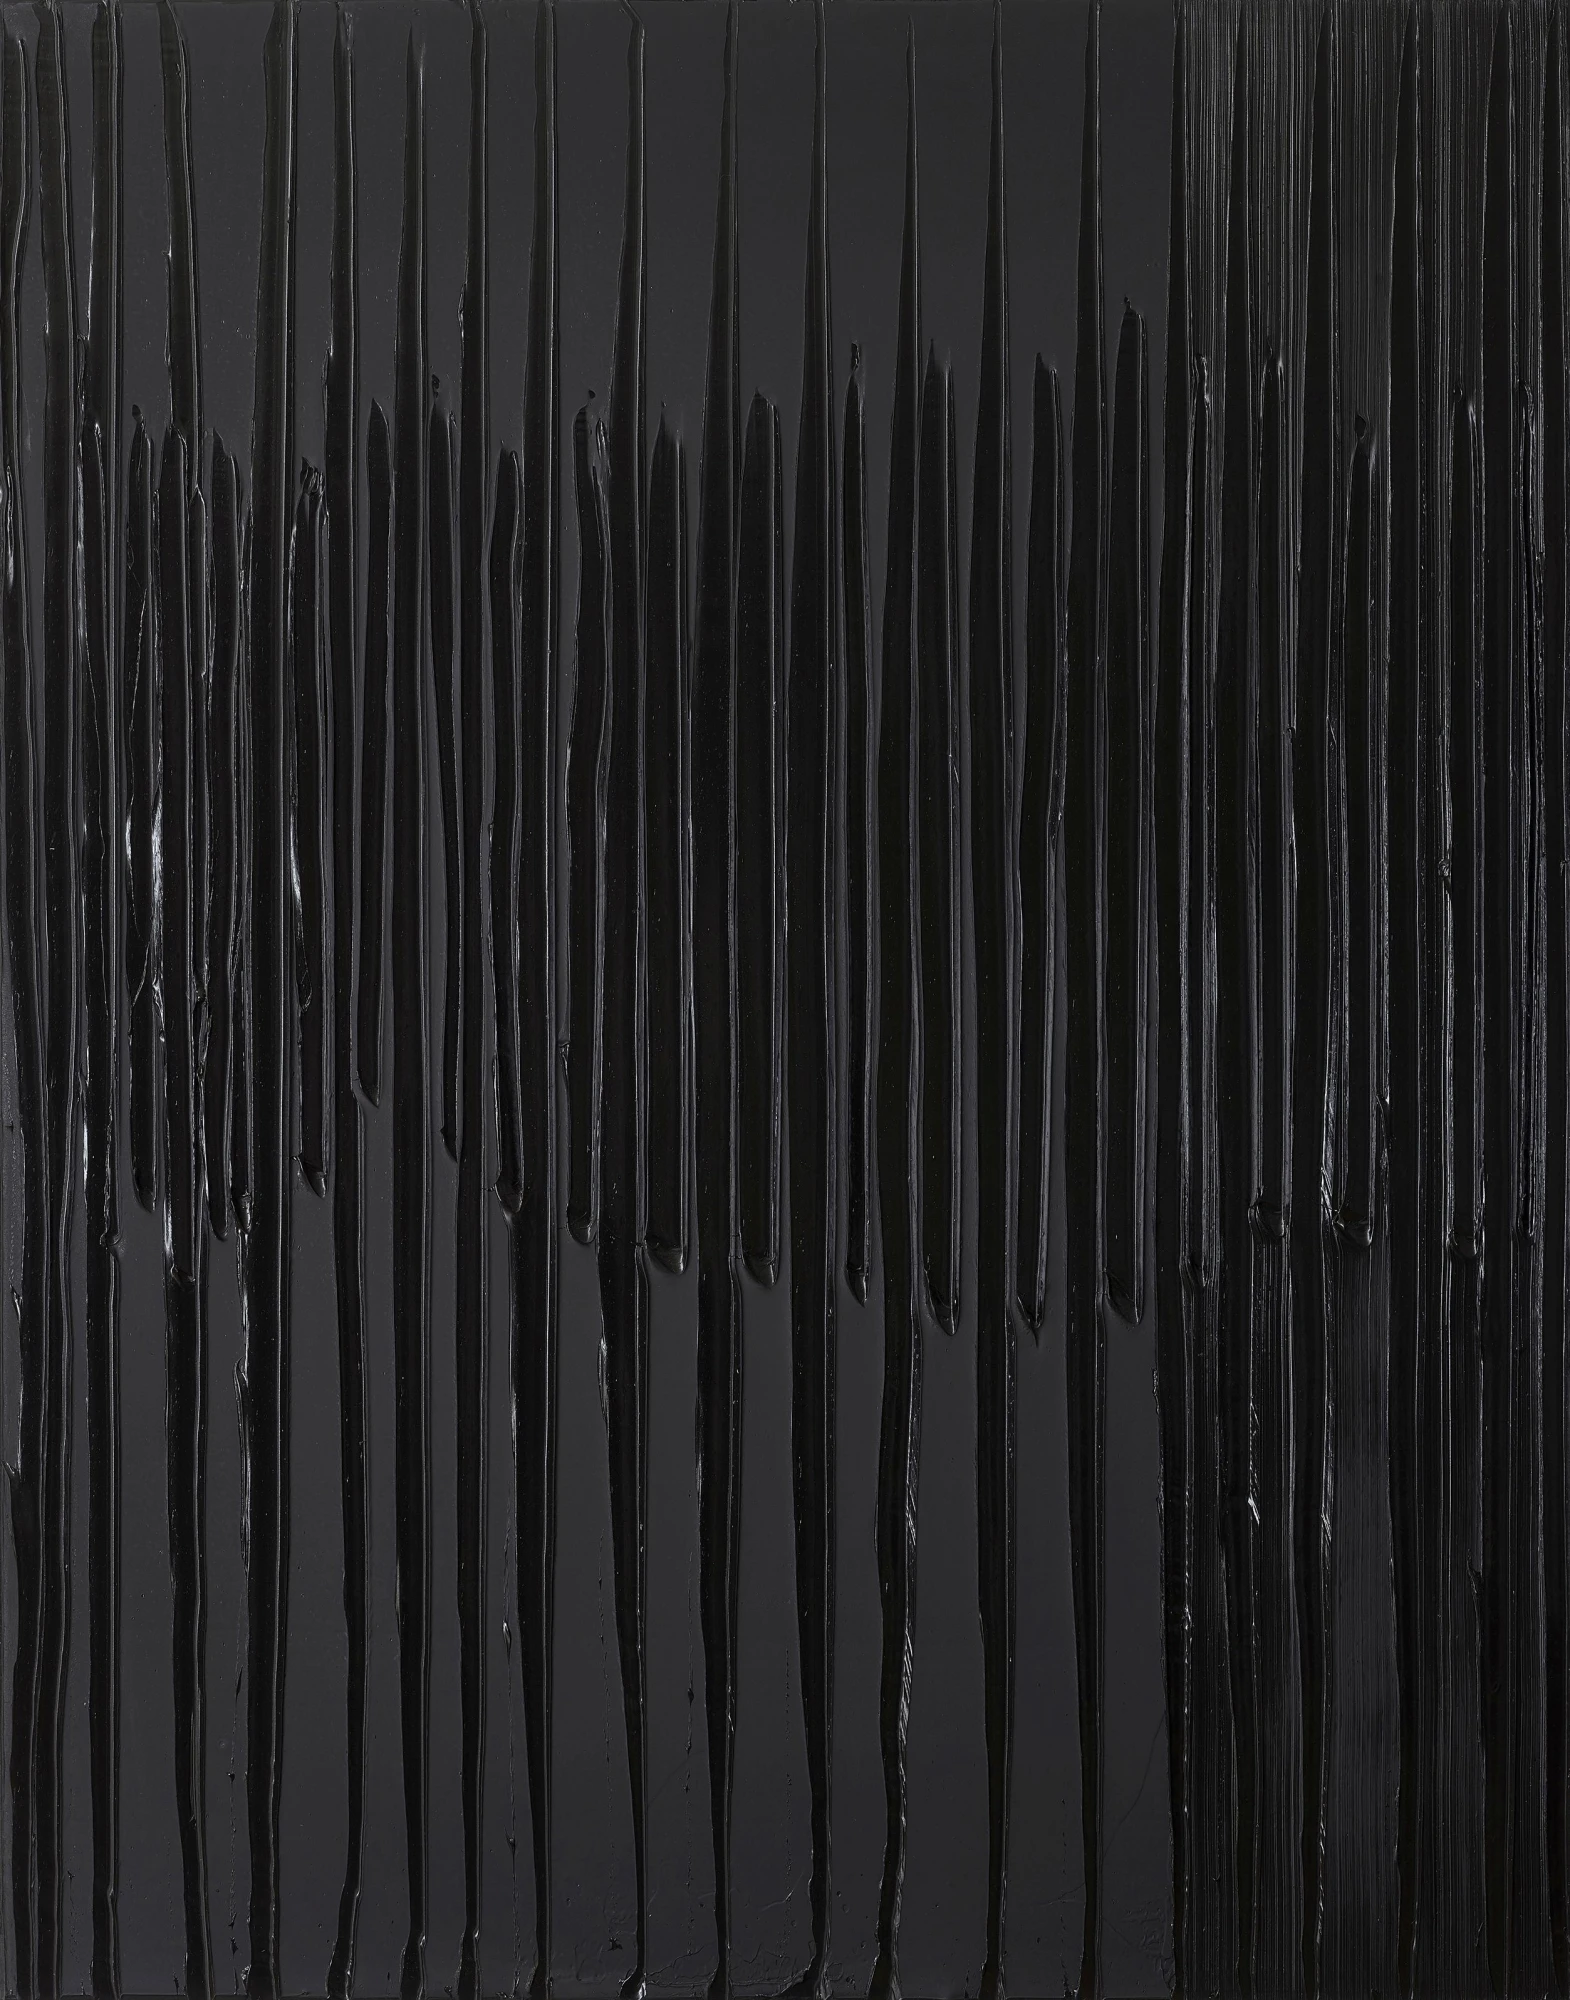 پیر سولاژ؛ خالق نقاشی‌هایی بالاتر از سیاهی